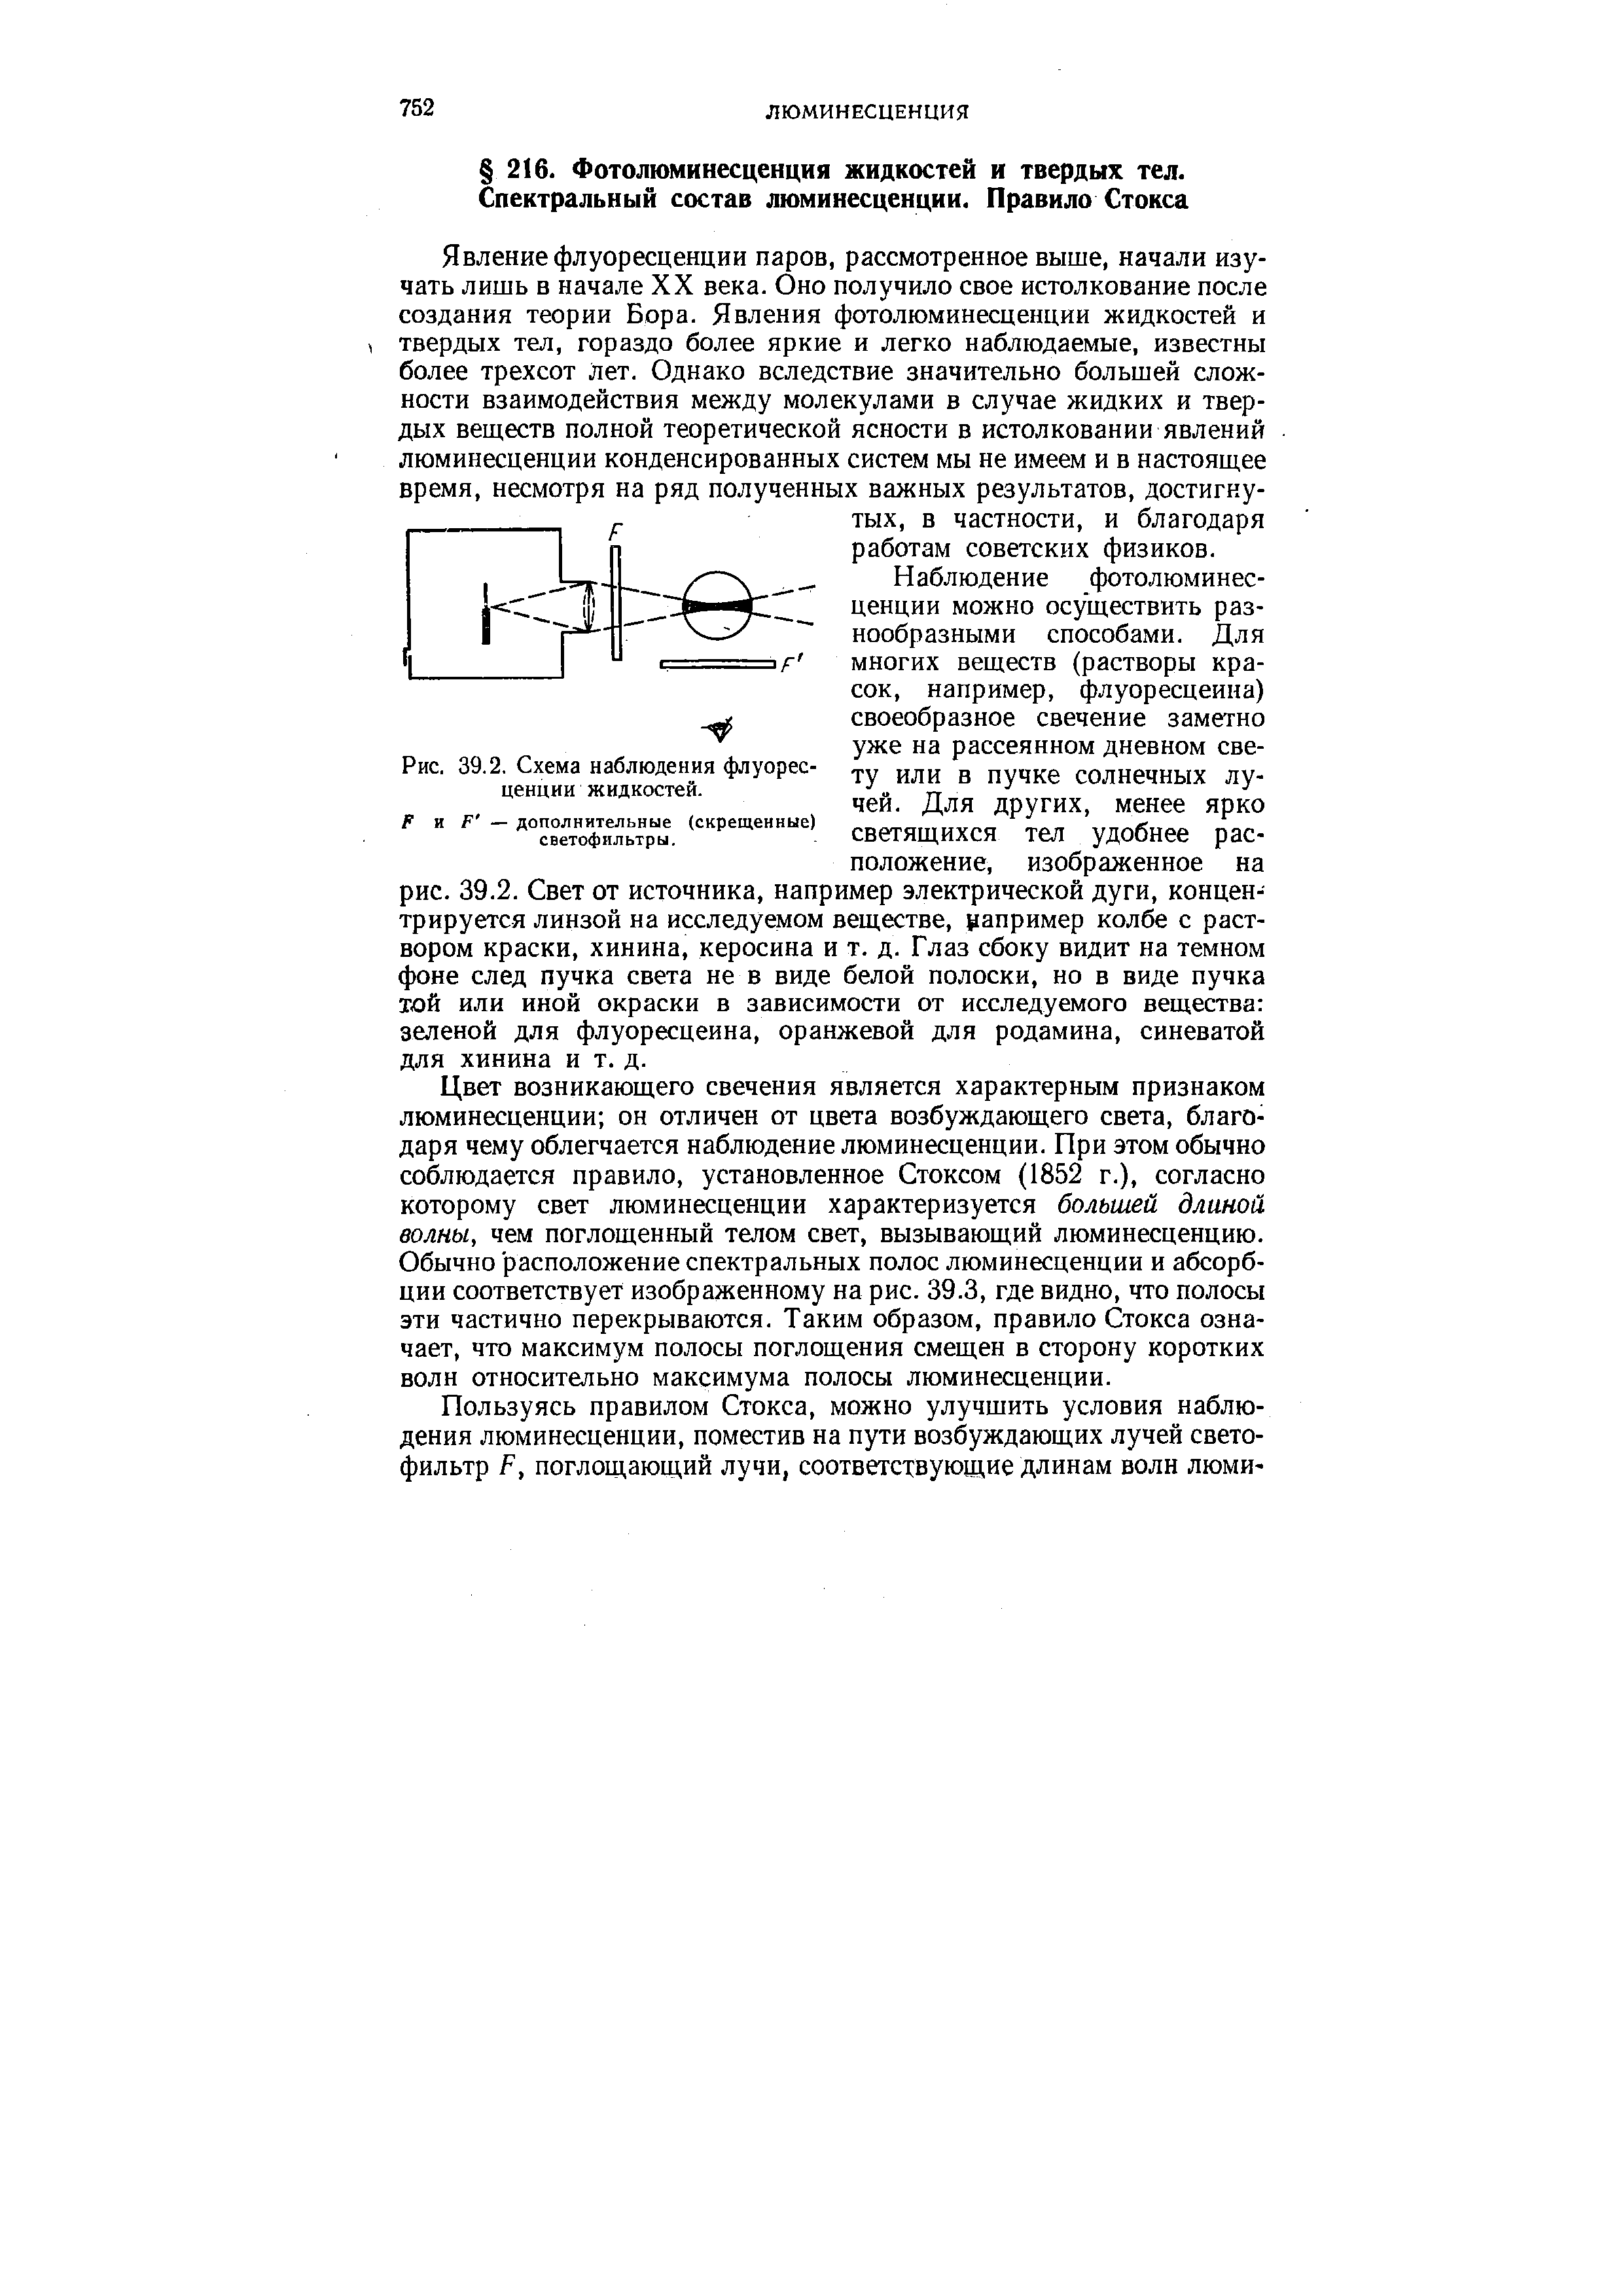 Рис. 39.2. Схема наблюдения флуоресценции жидкостей.
